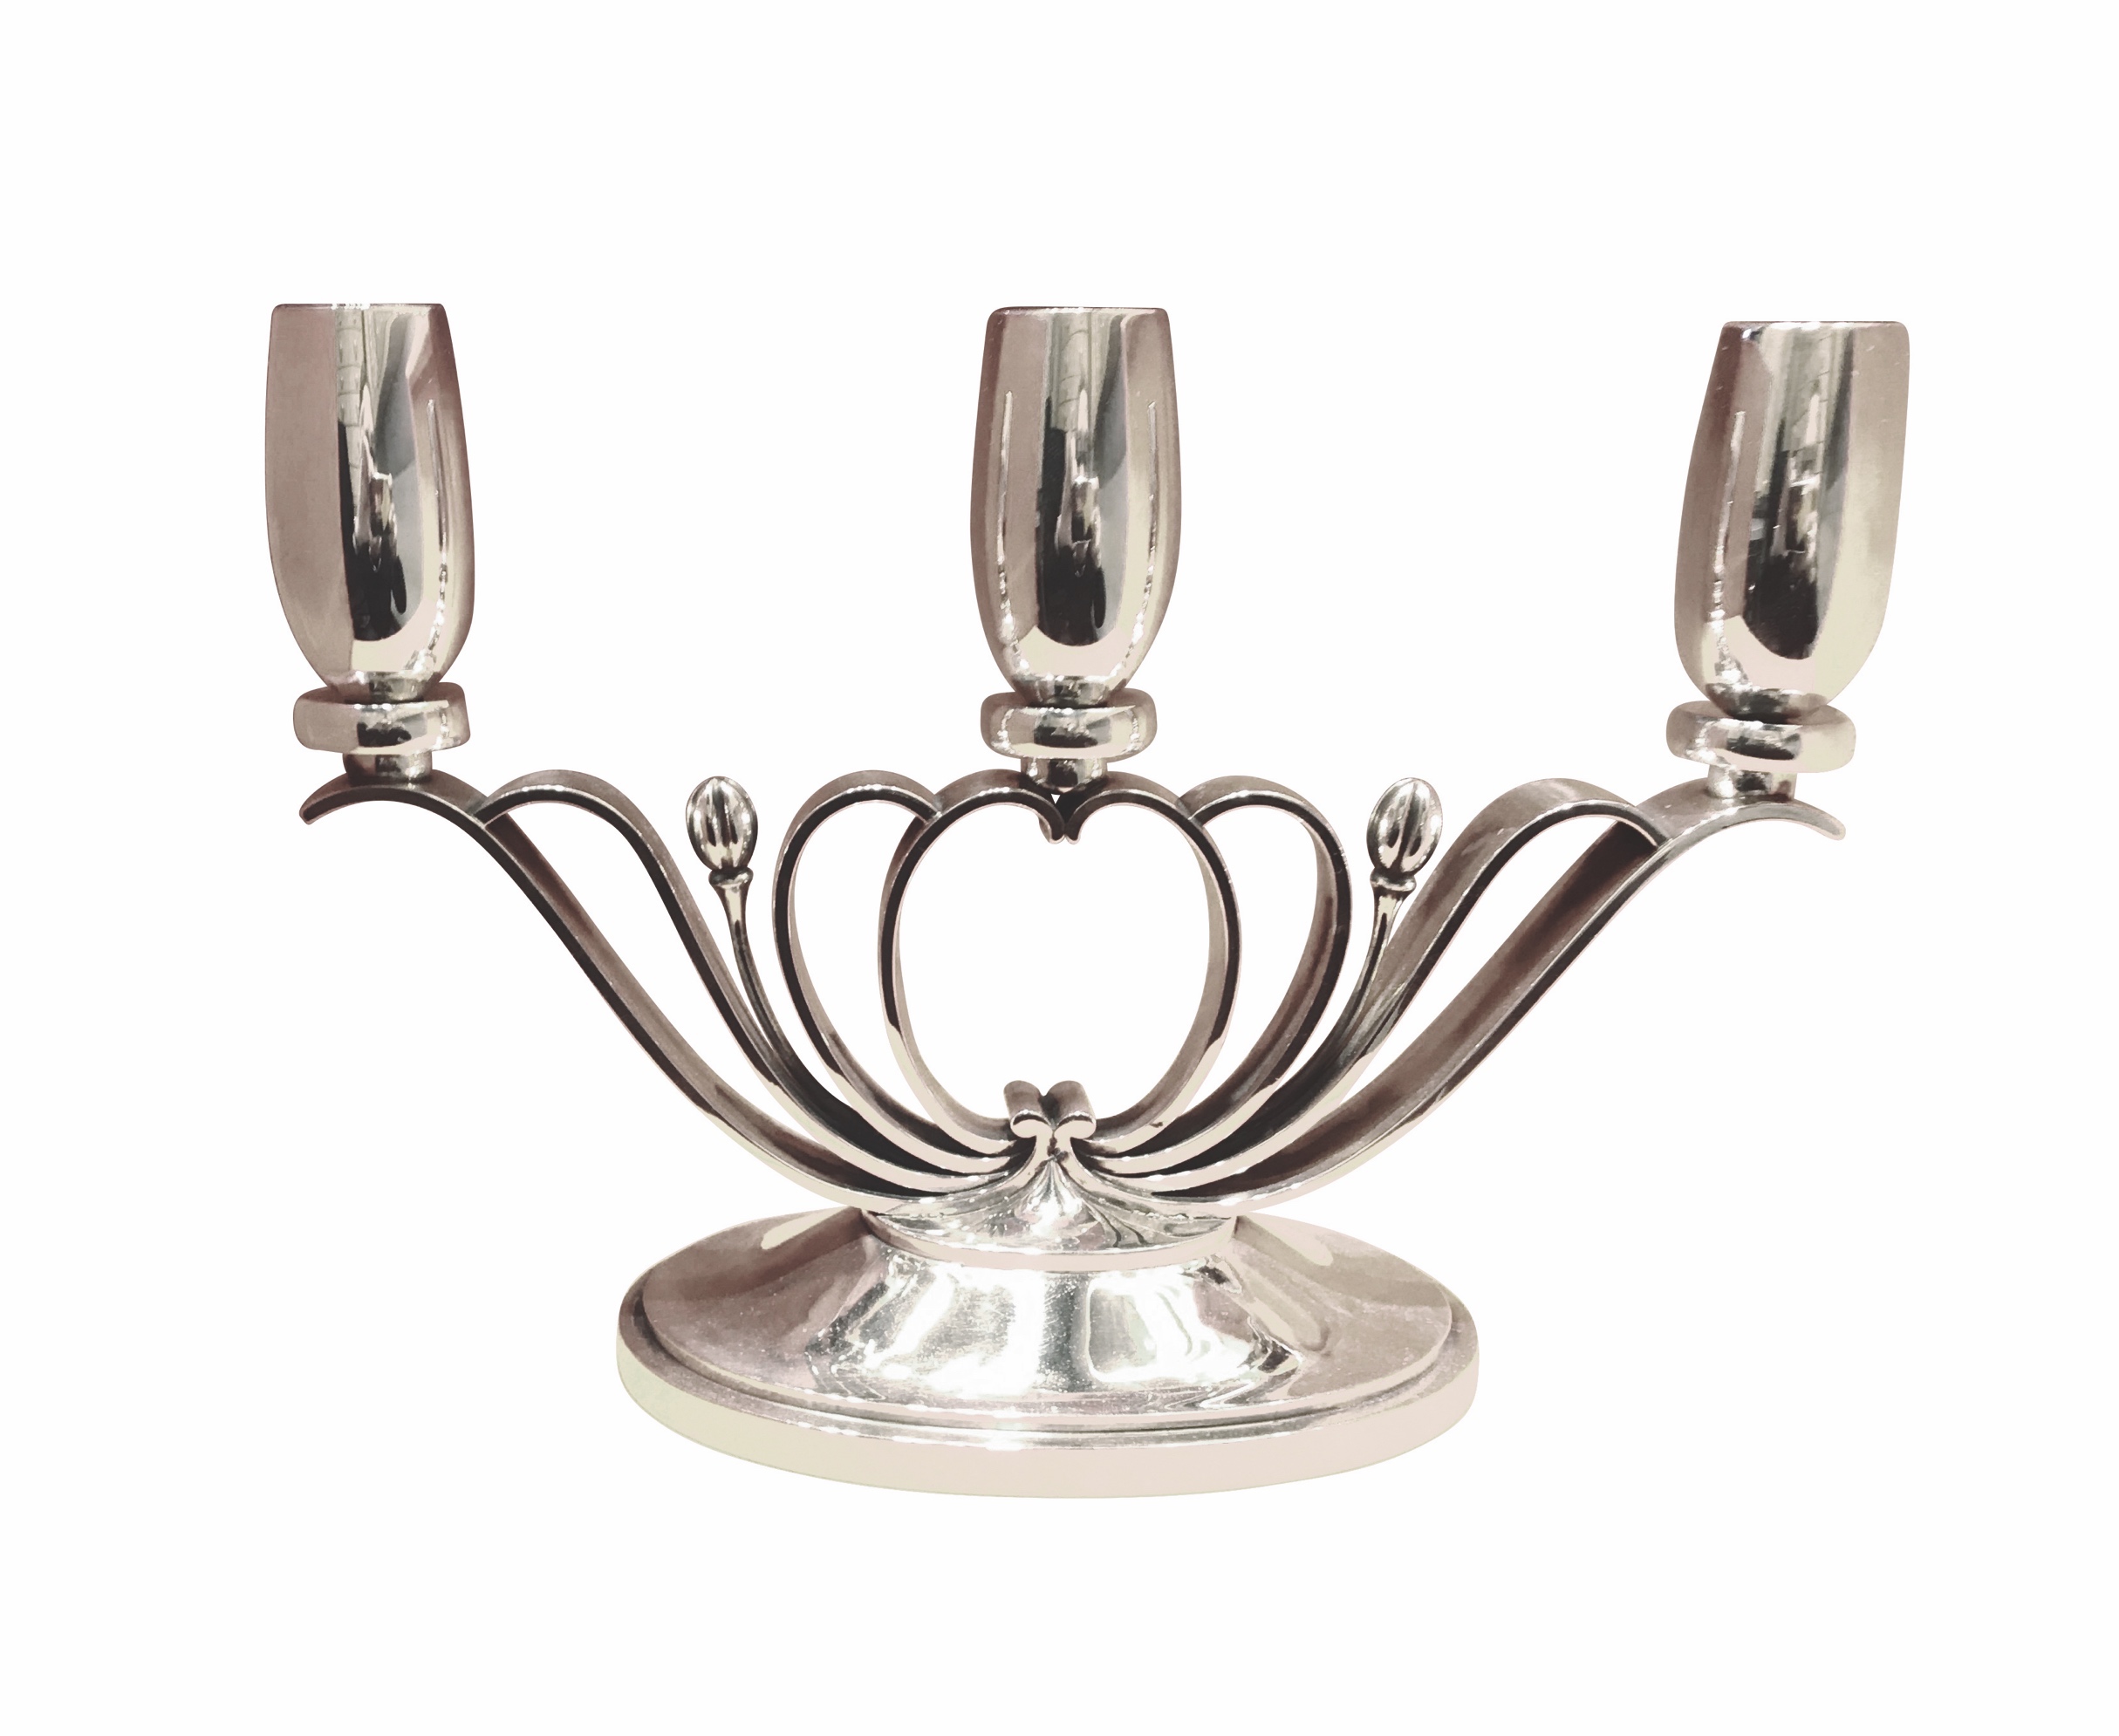 Ein Paar silberne Kerzenleuchter, 925 Silber, Evald Nielsen, Dänemark Art Deco Zeit, Silber Kontor Heiss, Foto: Silber Kontor Heiss